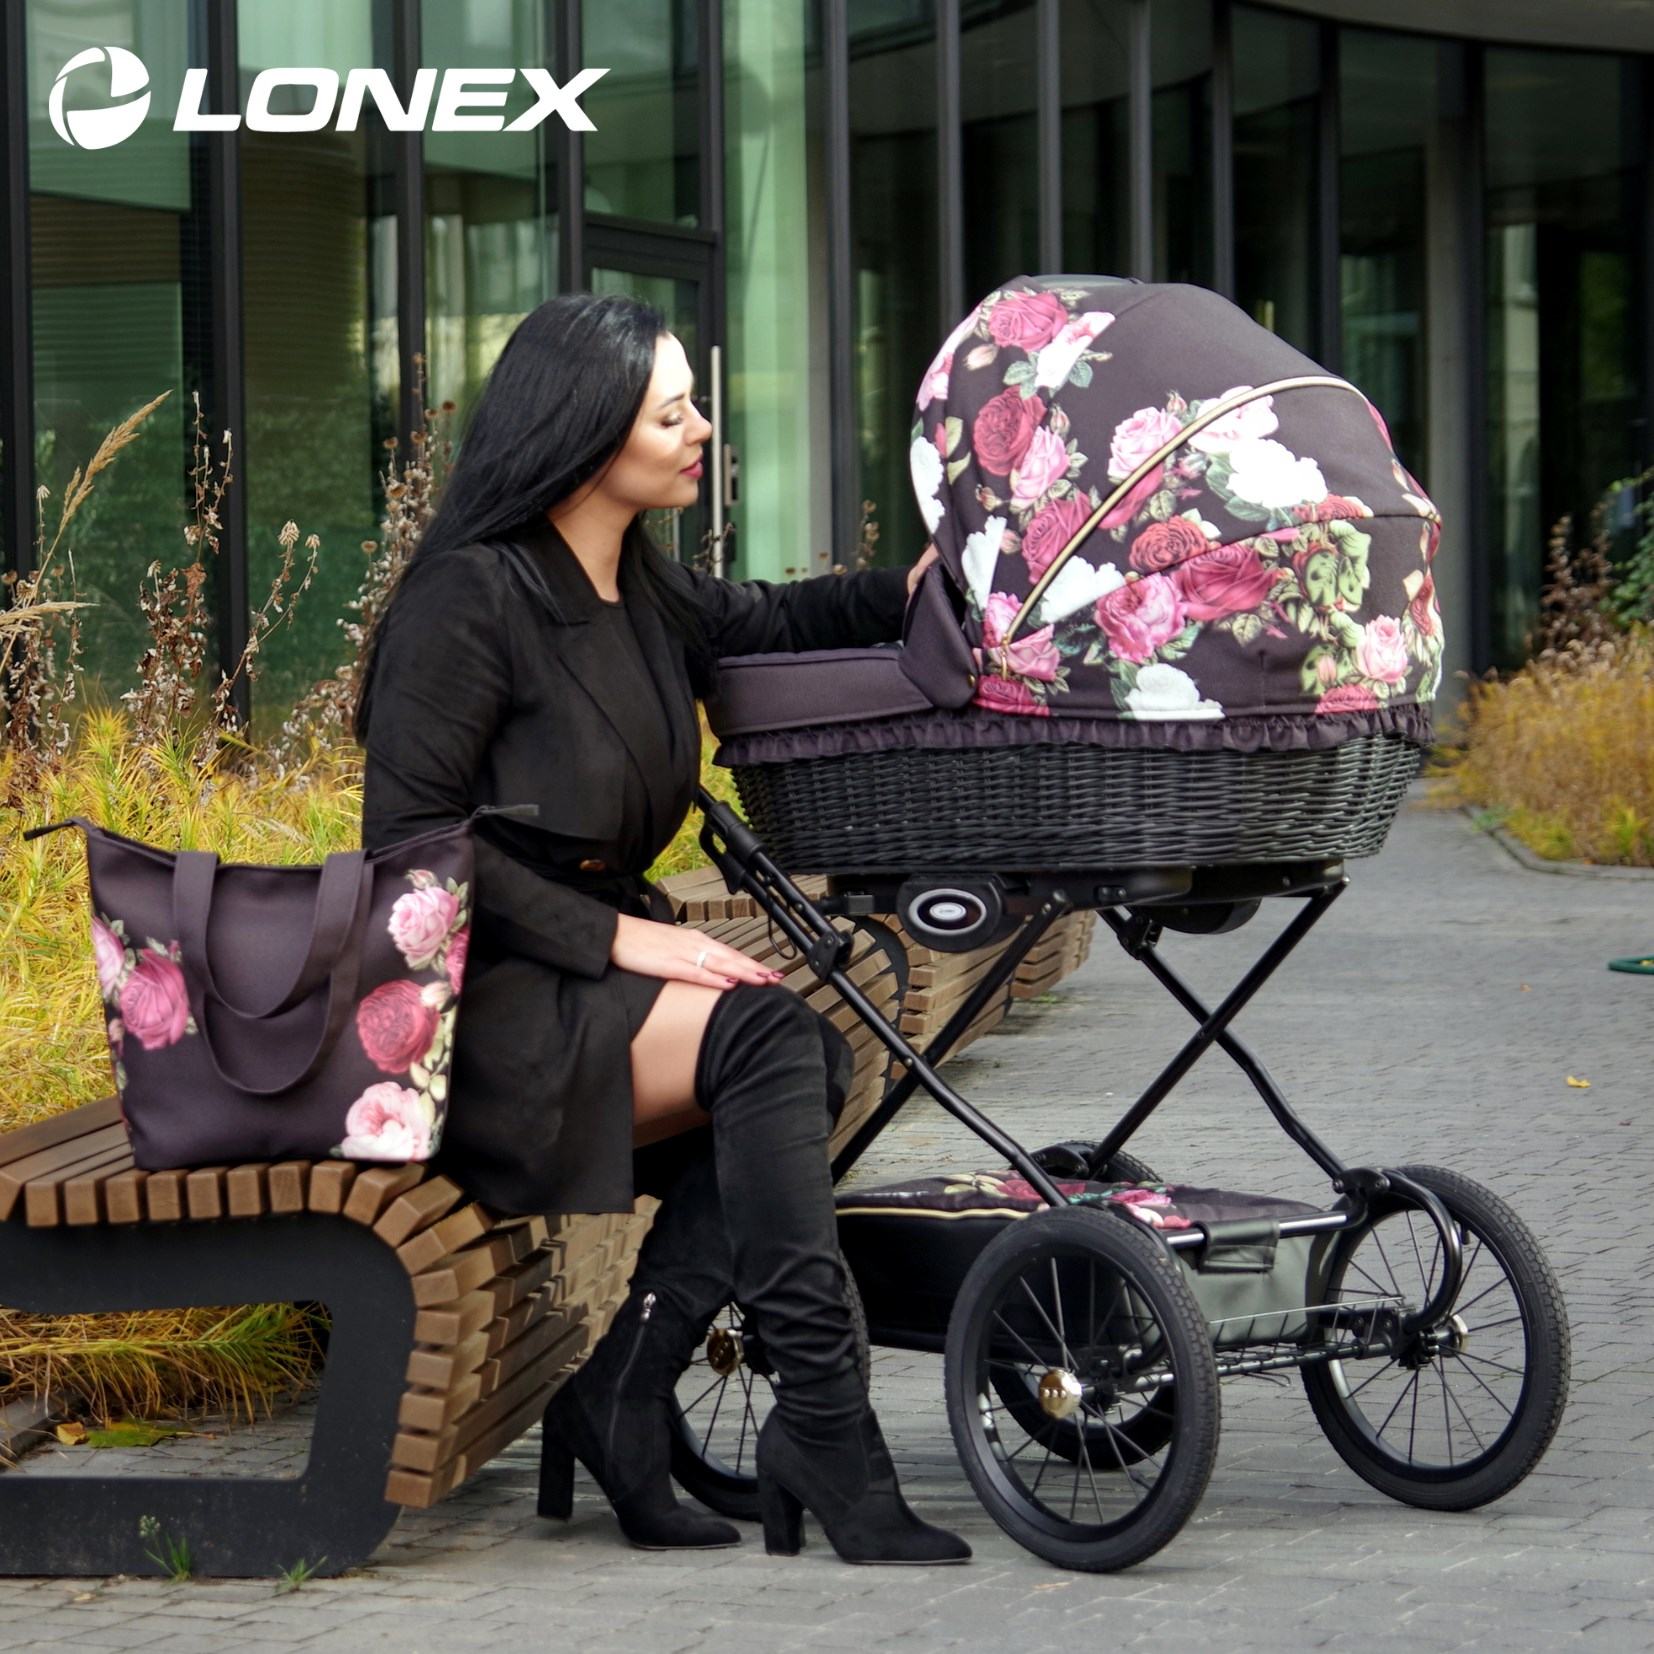 lonex retro garden wózki dziecięce w retro stylu producent polski online